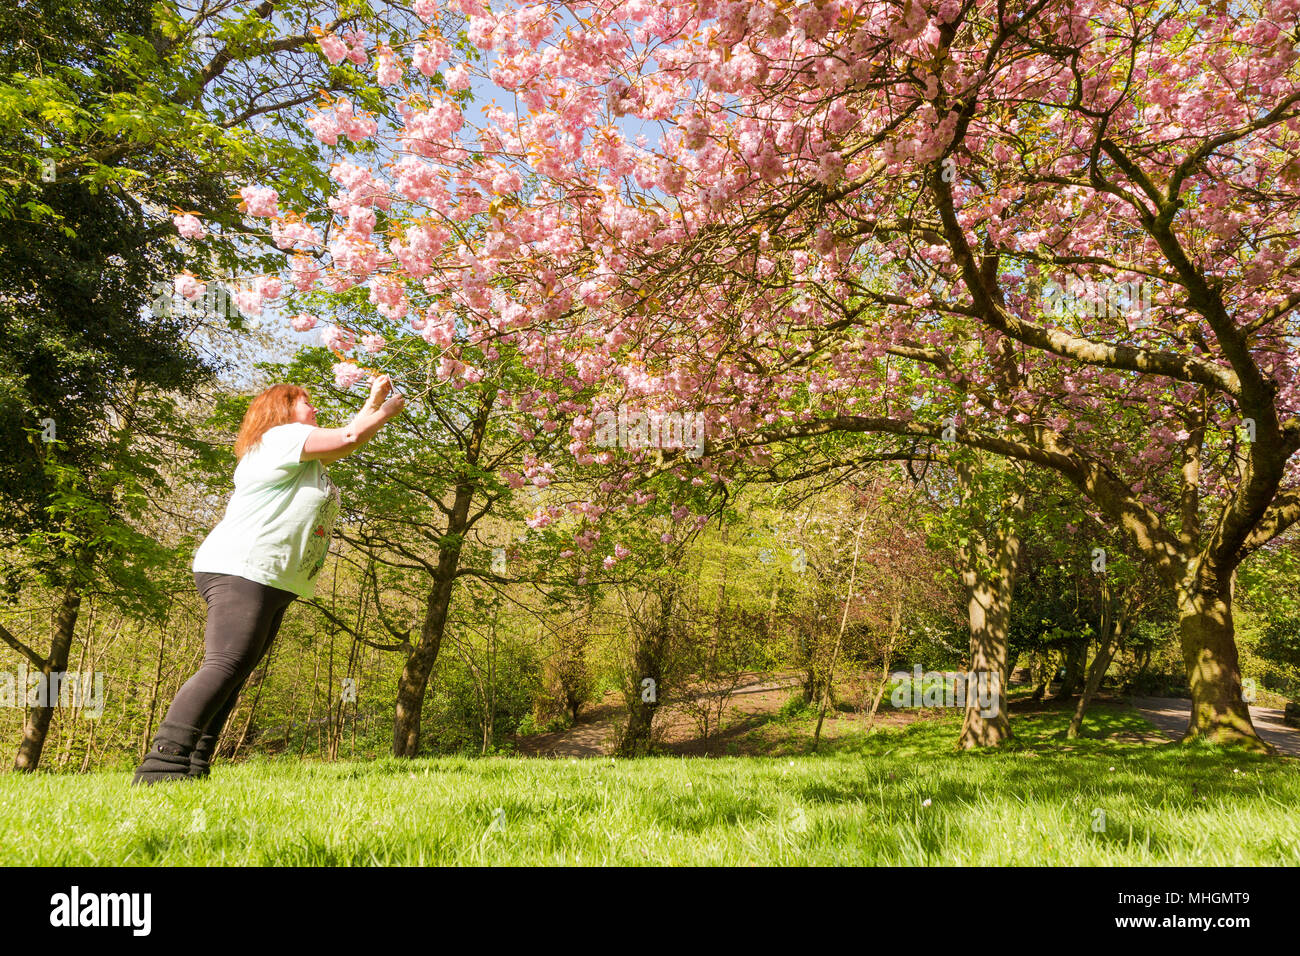 Mujer toma fotos de un árbol en flor flores en un parque uk Foto de stock